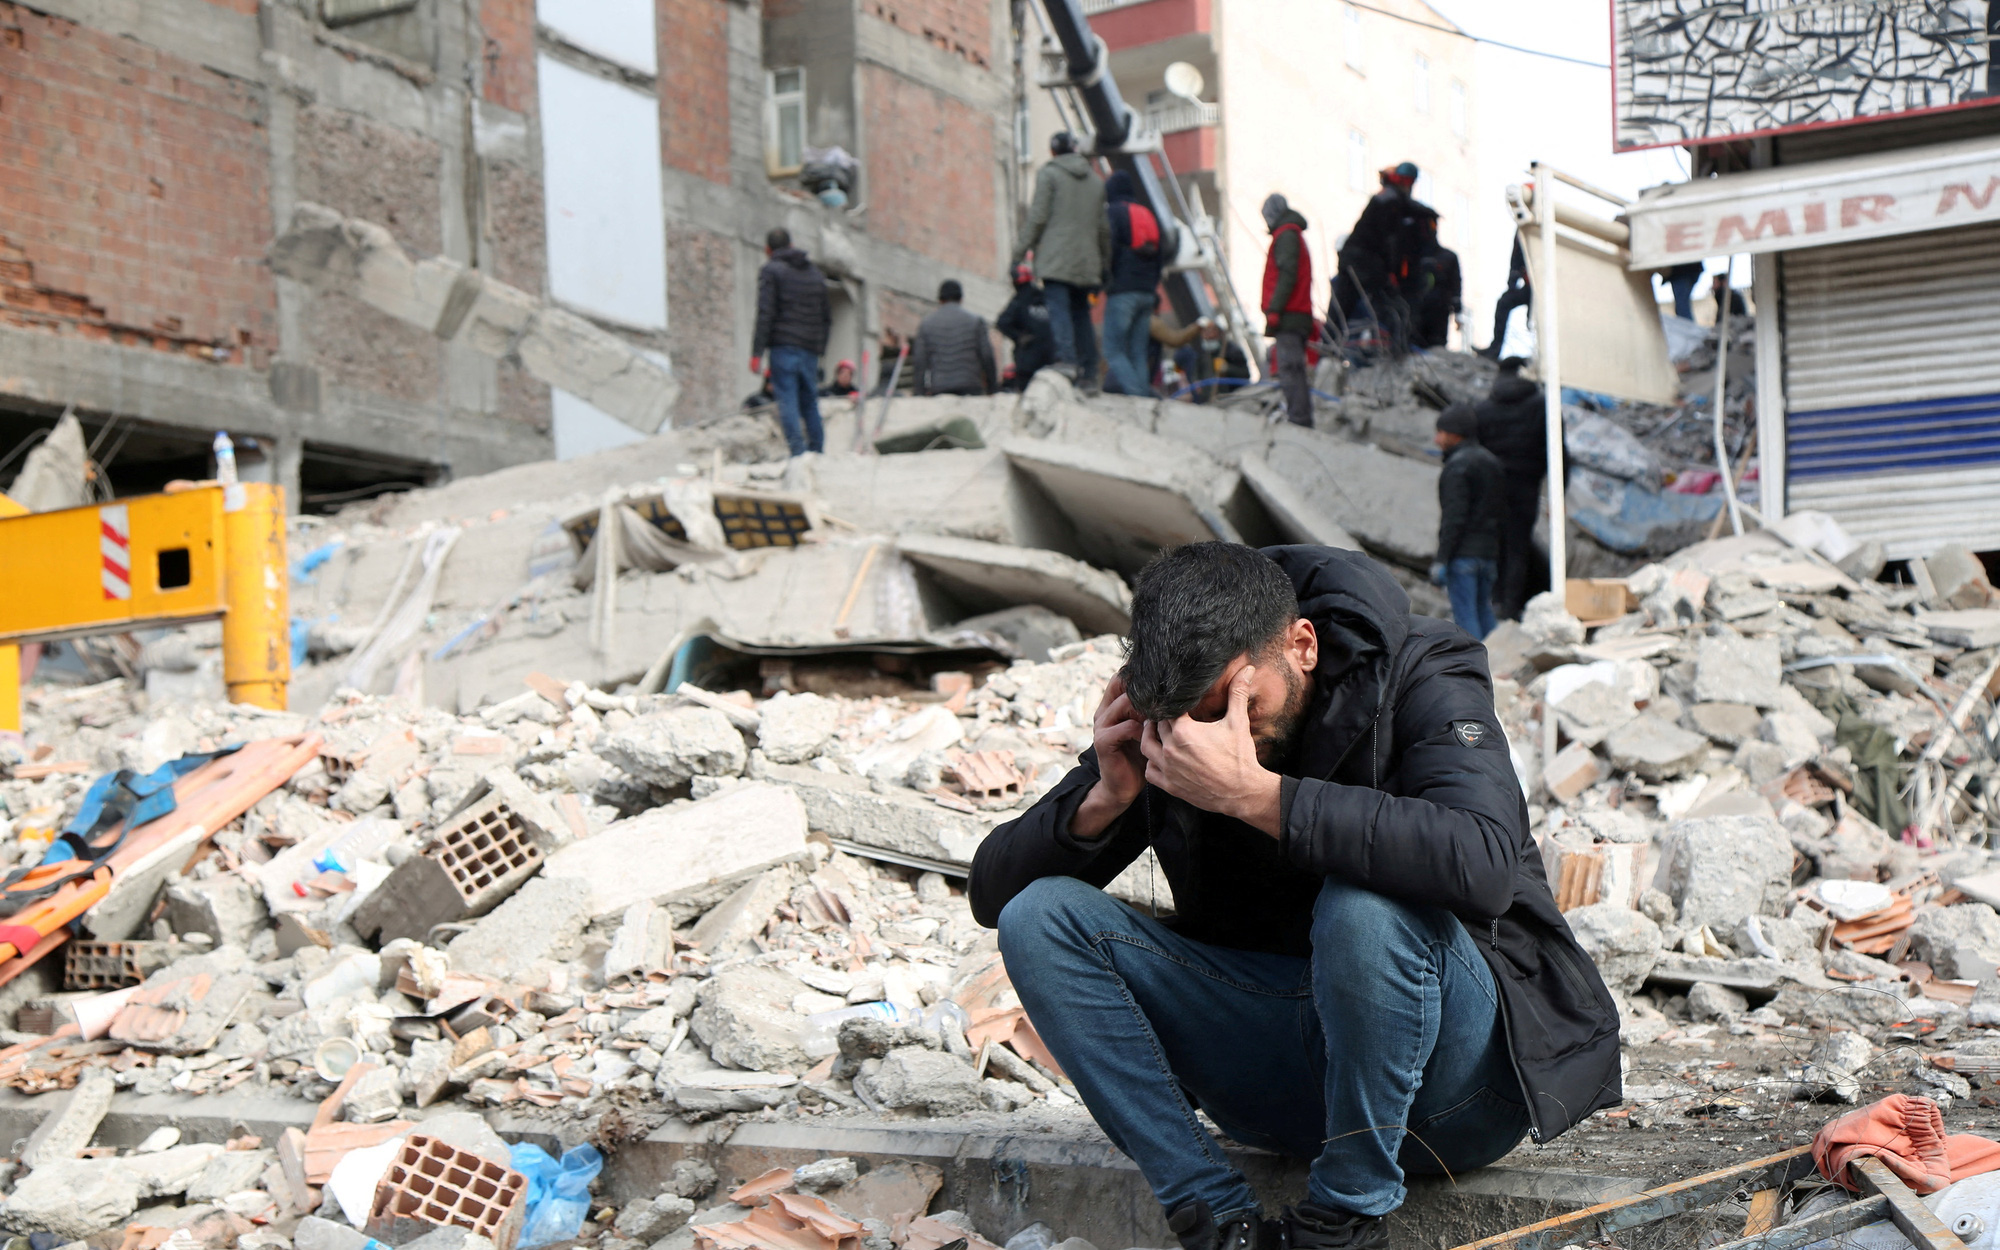 Số người thiệt mạng do động đất ở Thổ Nhĩ Kỳ và Syria vượt 11.000